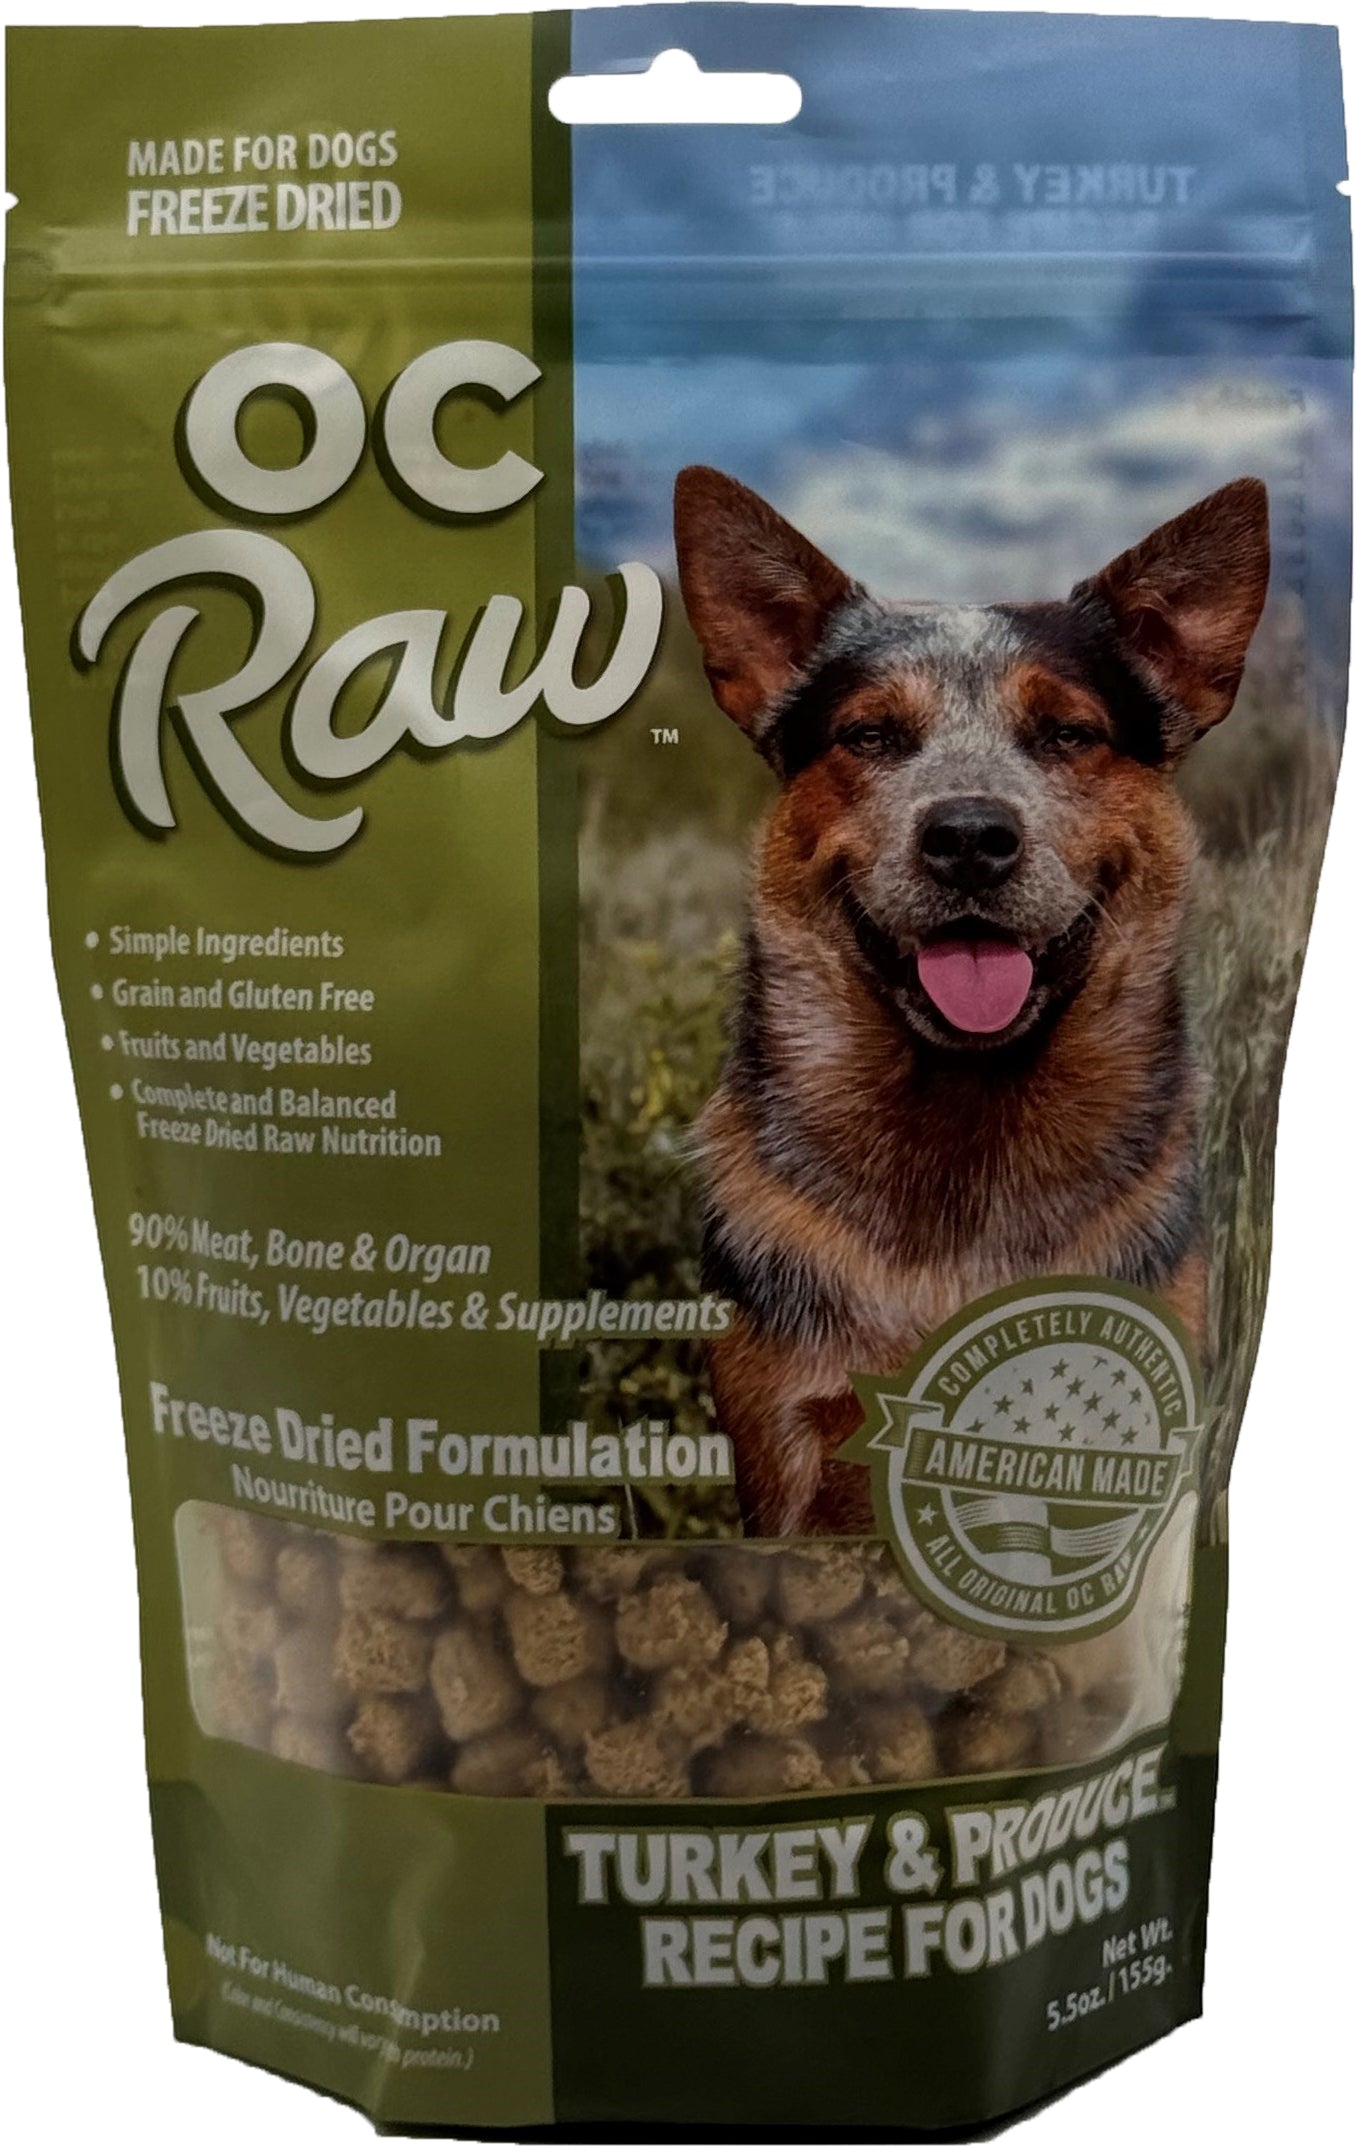 OC Raw Freeze Dried Raw For Dogs - Turkey & Produce Meaty Rox 5.5oz